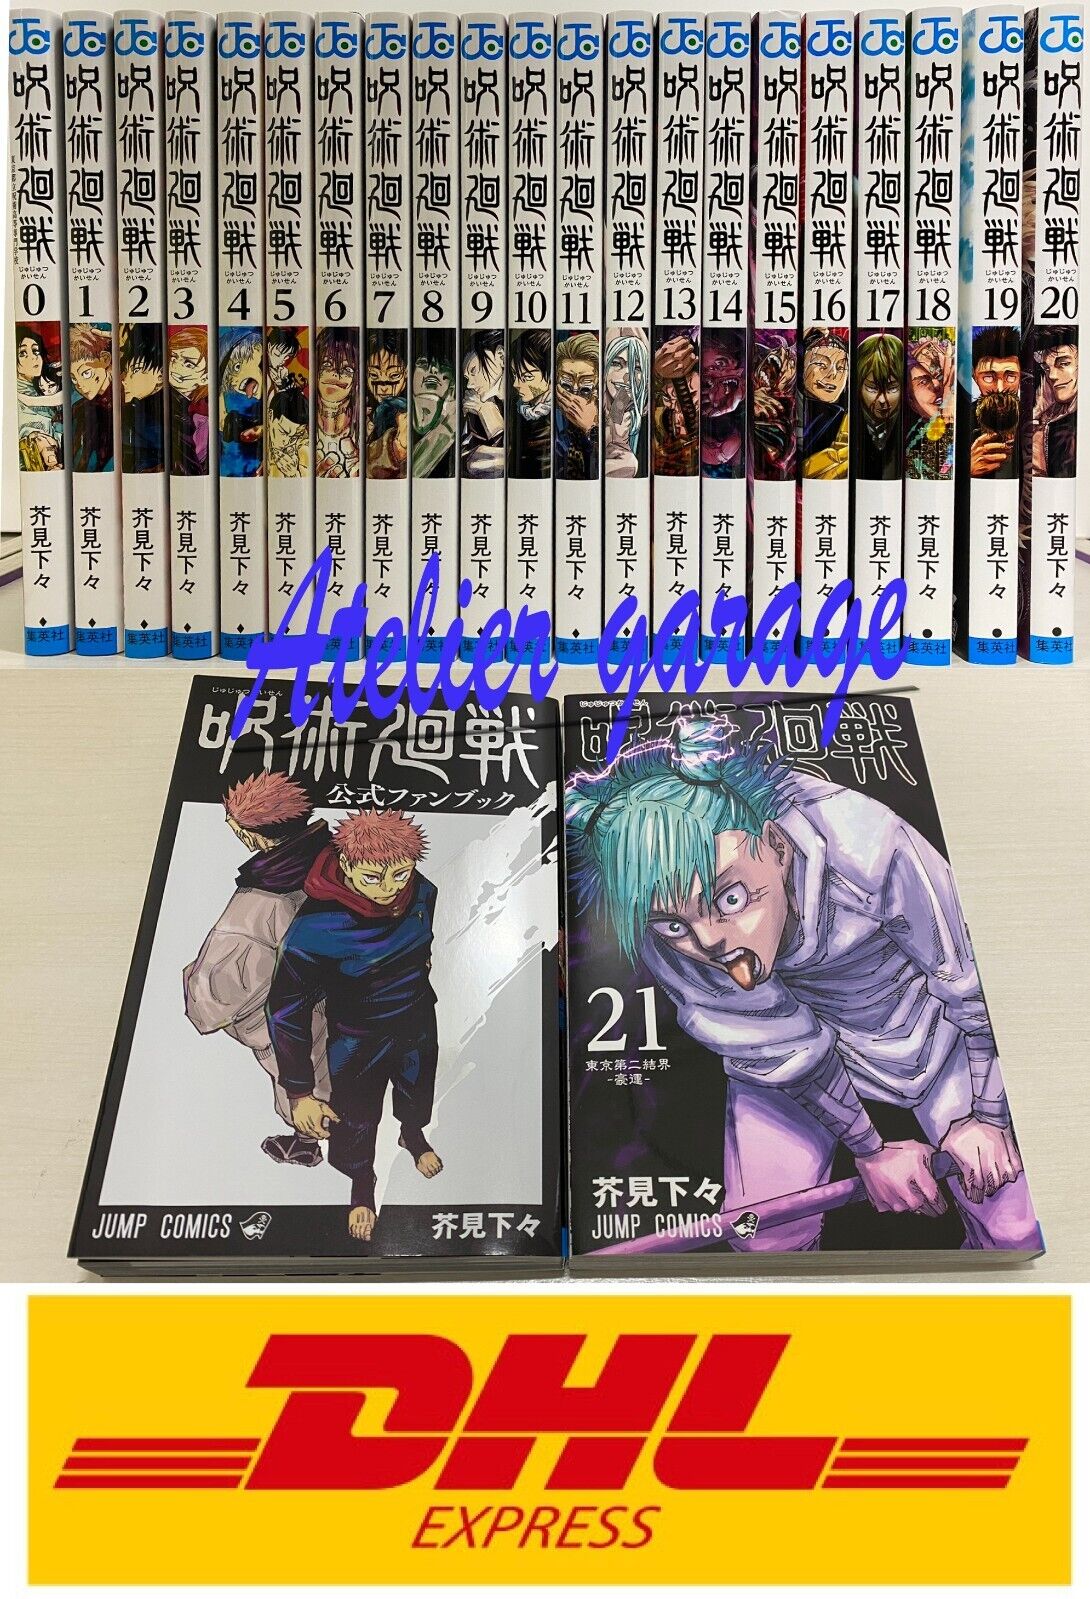 ALL New Jujutsukaisen Vol.0+1-21+Official Fan Book 23 Set Japanese Manga